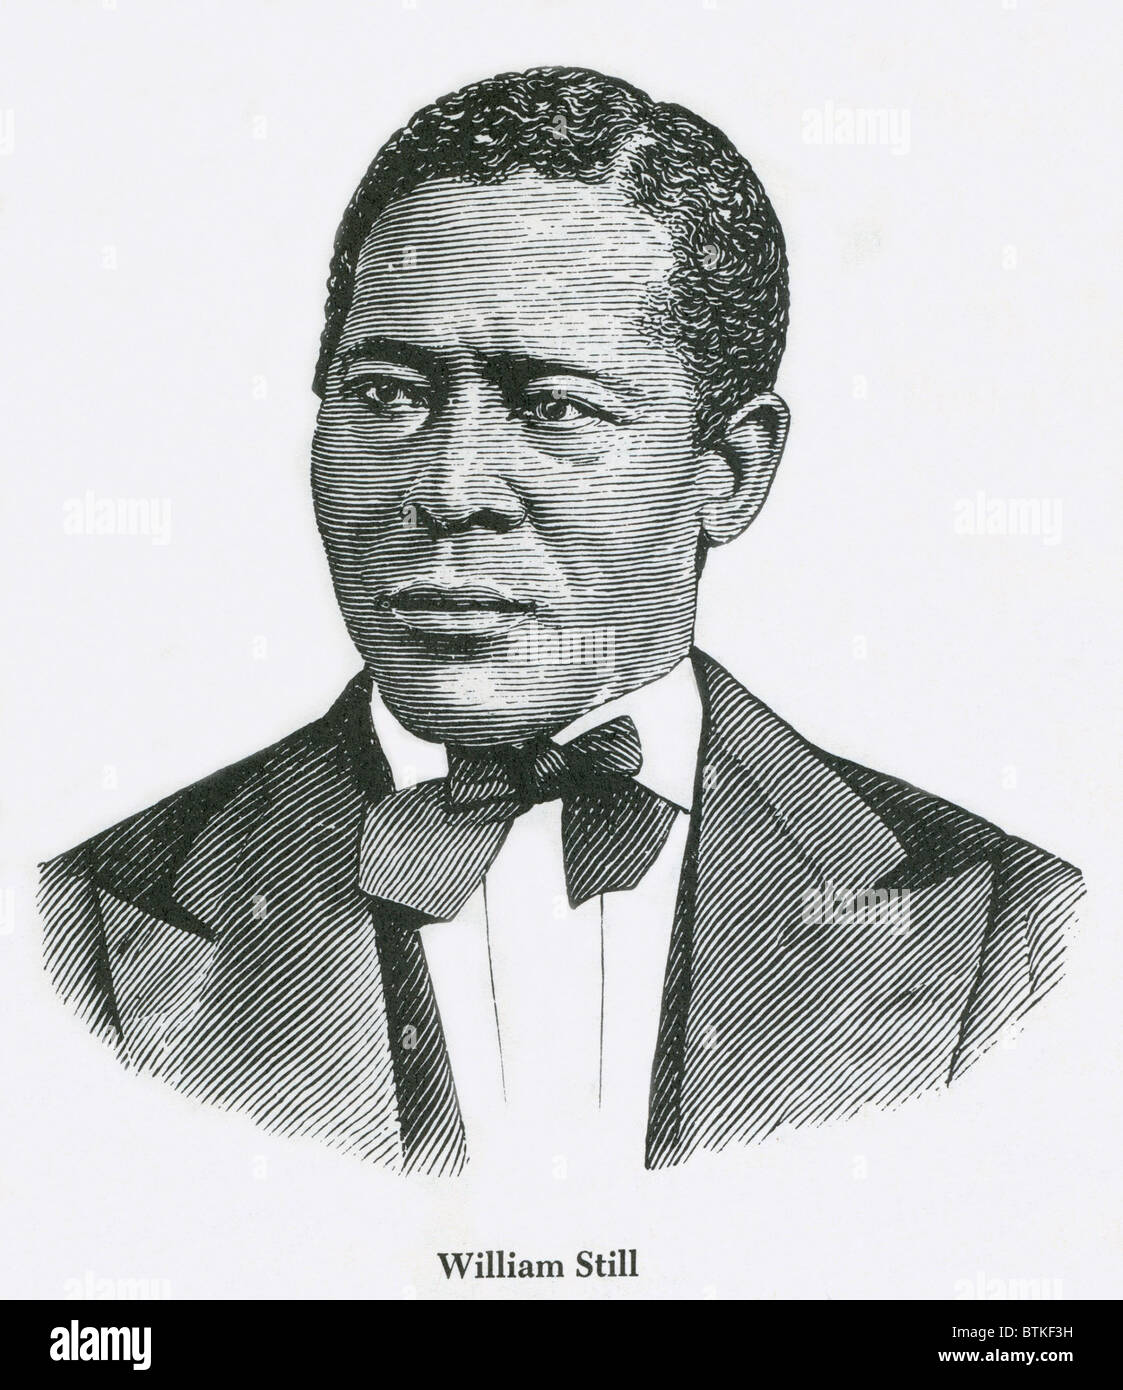 William toujours (1819-1902) est un Afro-américain abolitionniste, chef d'orchestre sur et historien de l'Underground Railroad. Toujours aidé plus de 60 esclaves de la liberté et de tenues secrètes sur lesquelles il a fondé son histoire, publié le métro RAIL ROAD RECORDS en 1873. Banque D'Images